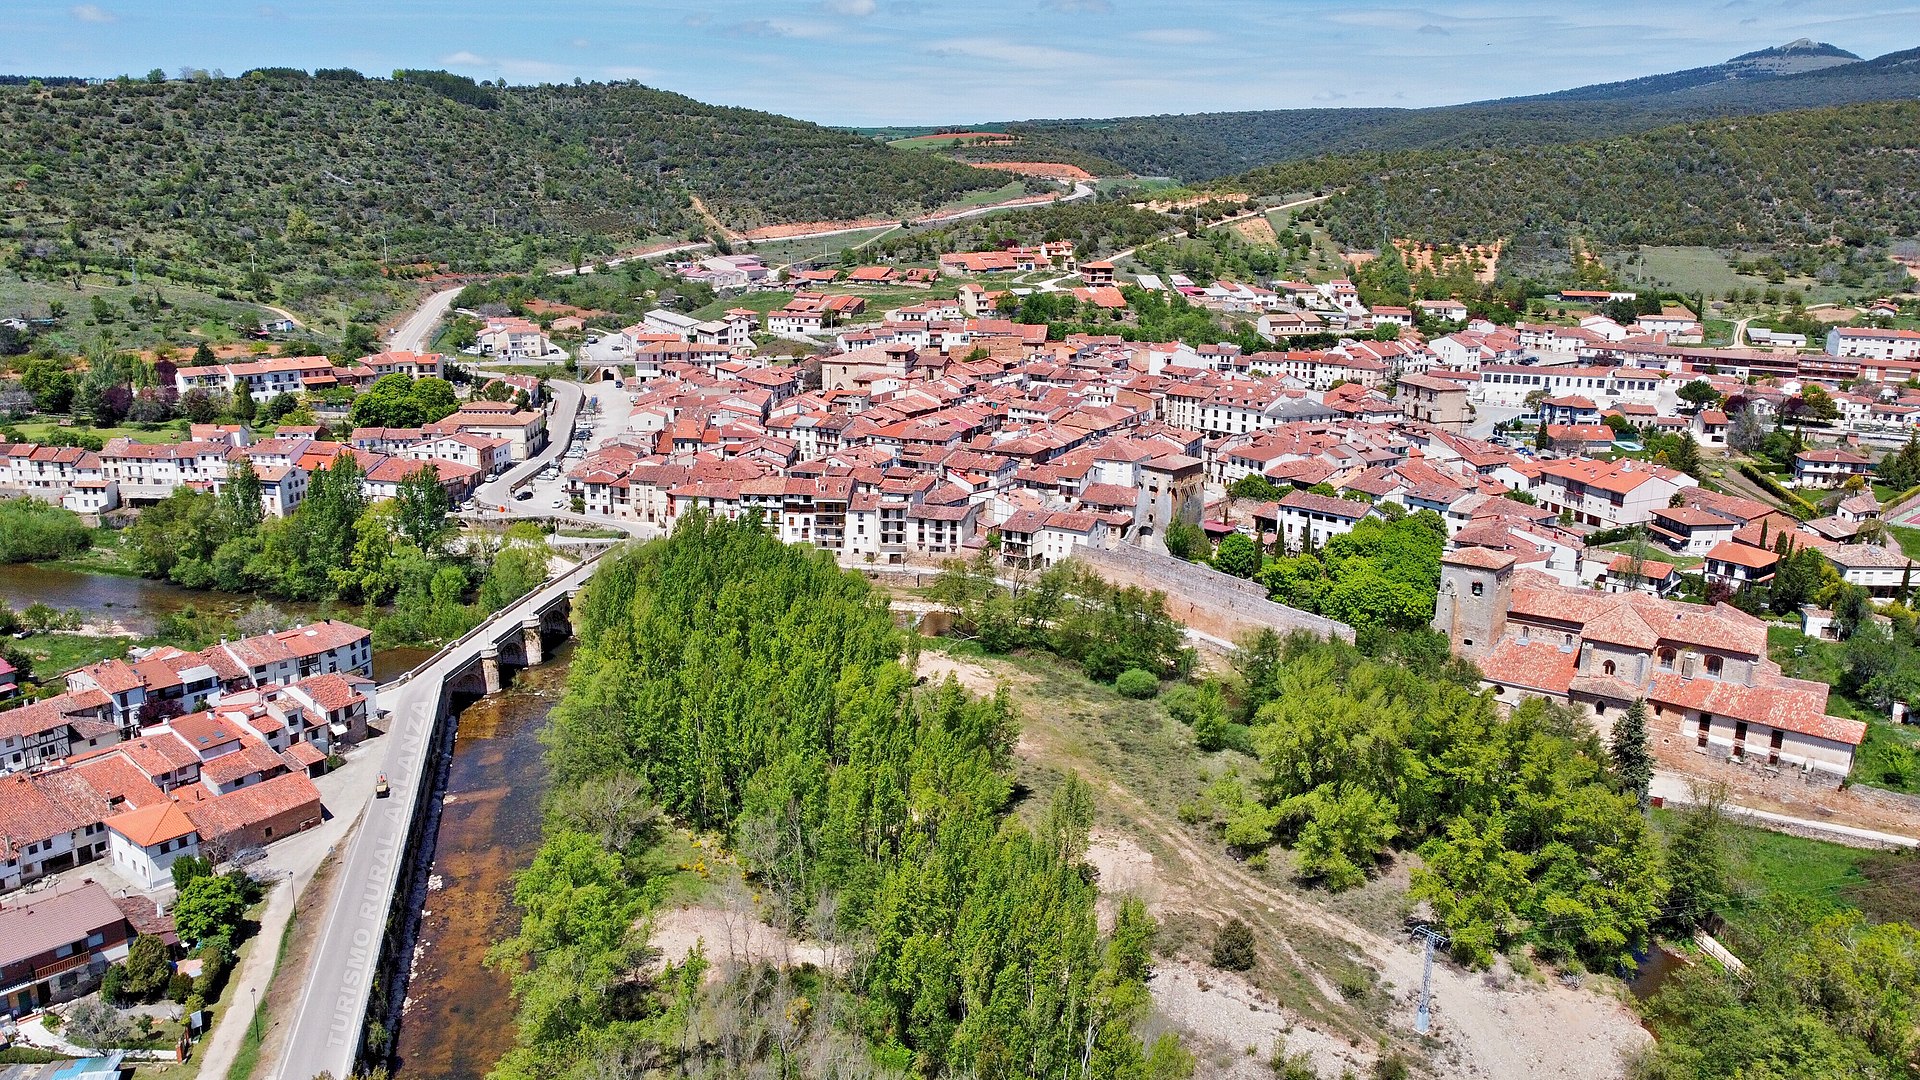 Vista aérea de Covarrubias, su puente y el Arlanza. Fuente: Wikicommons.